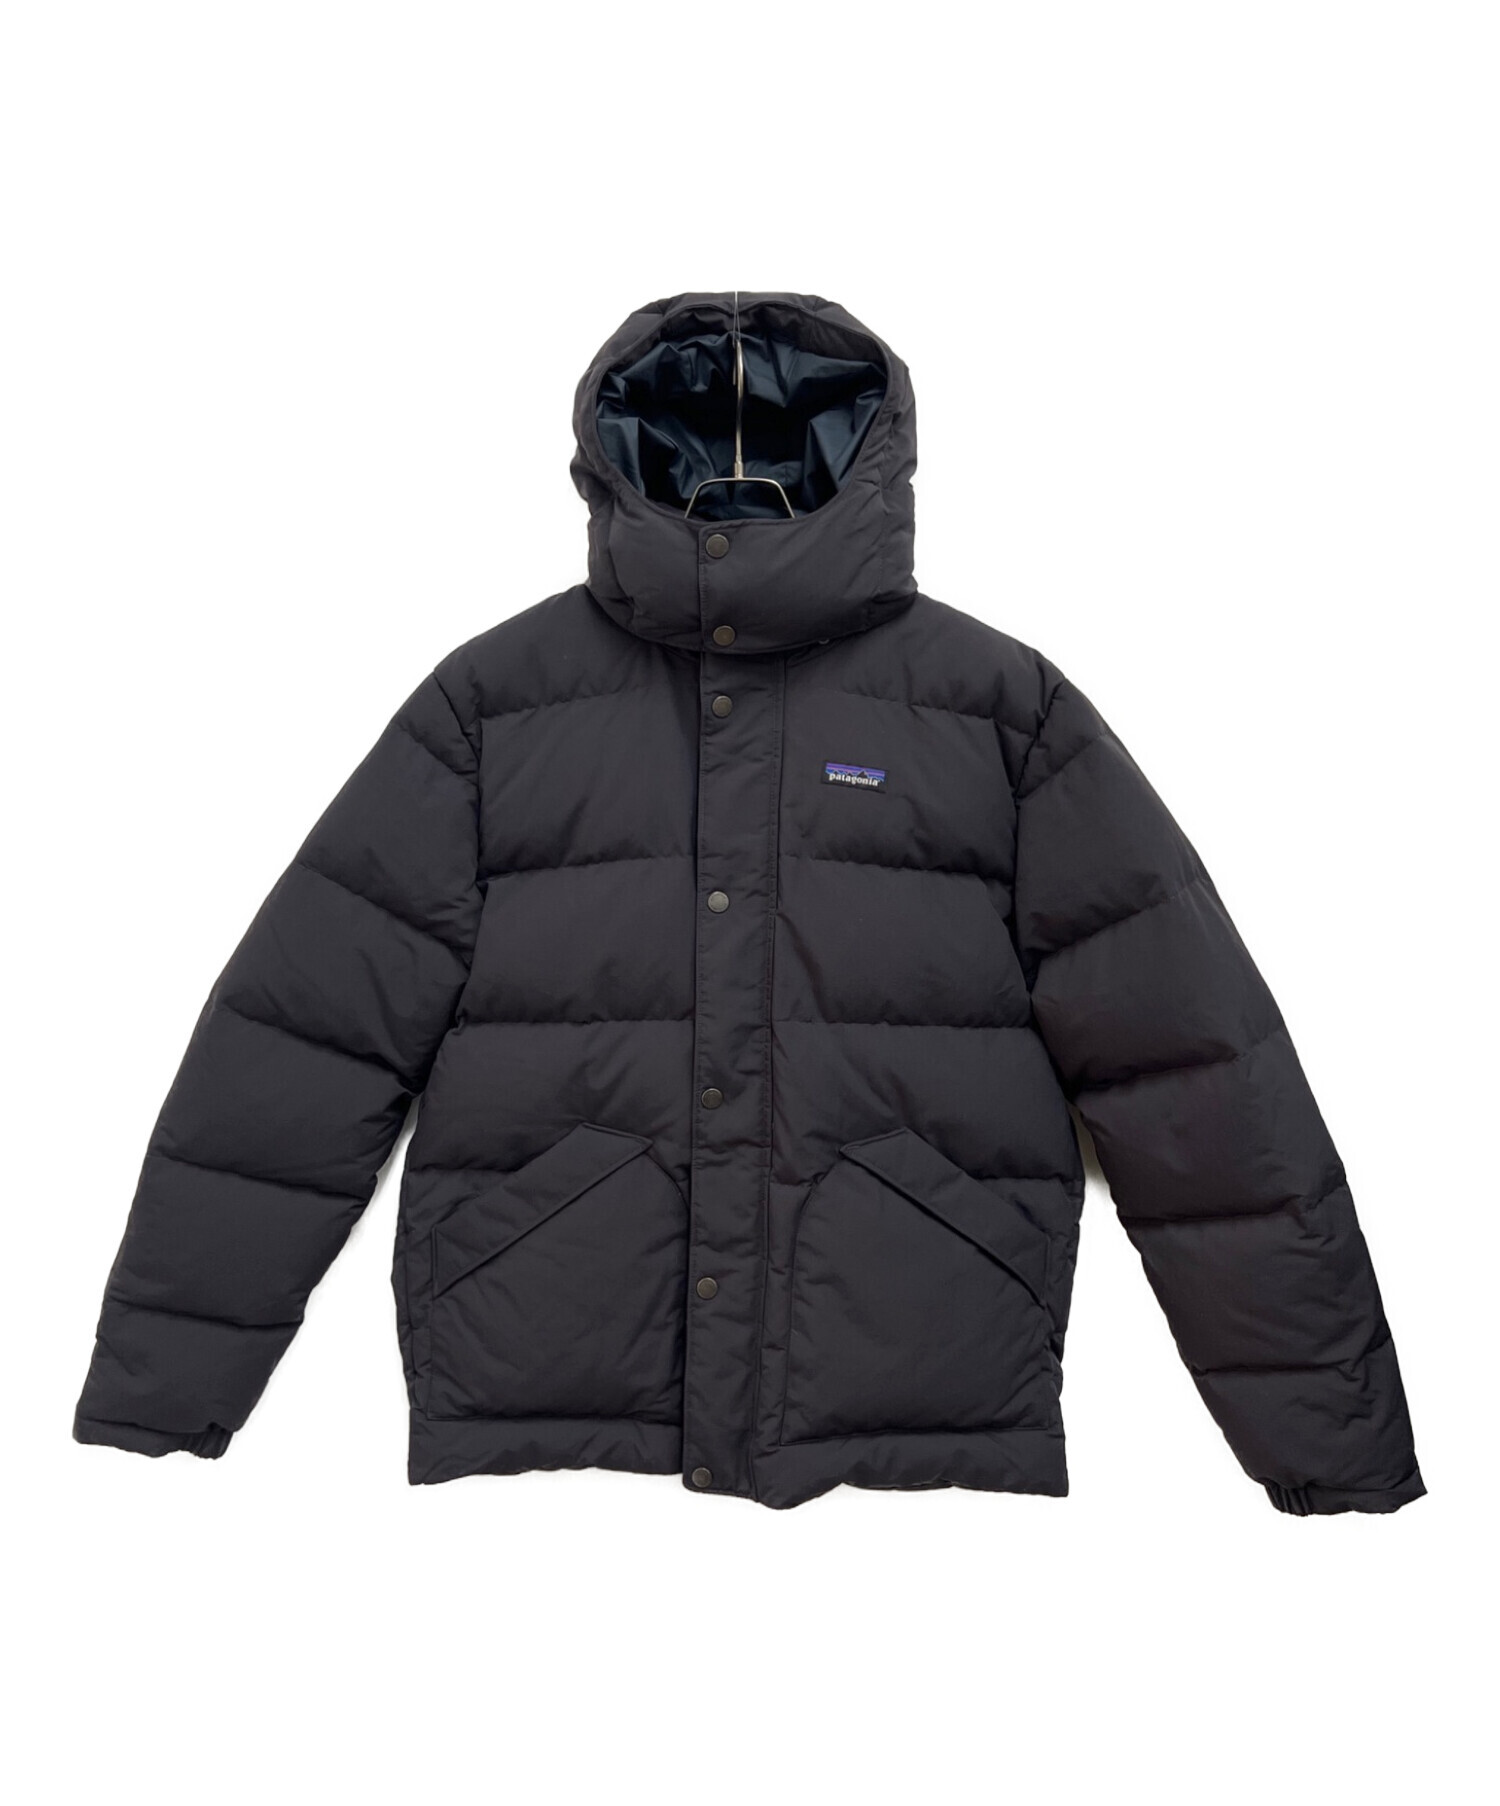 Patagonia (パタゴニア) ダウンジャケット ブラック サイズ:M